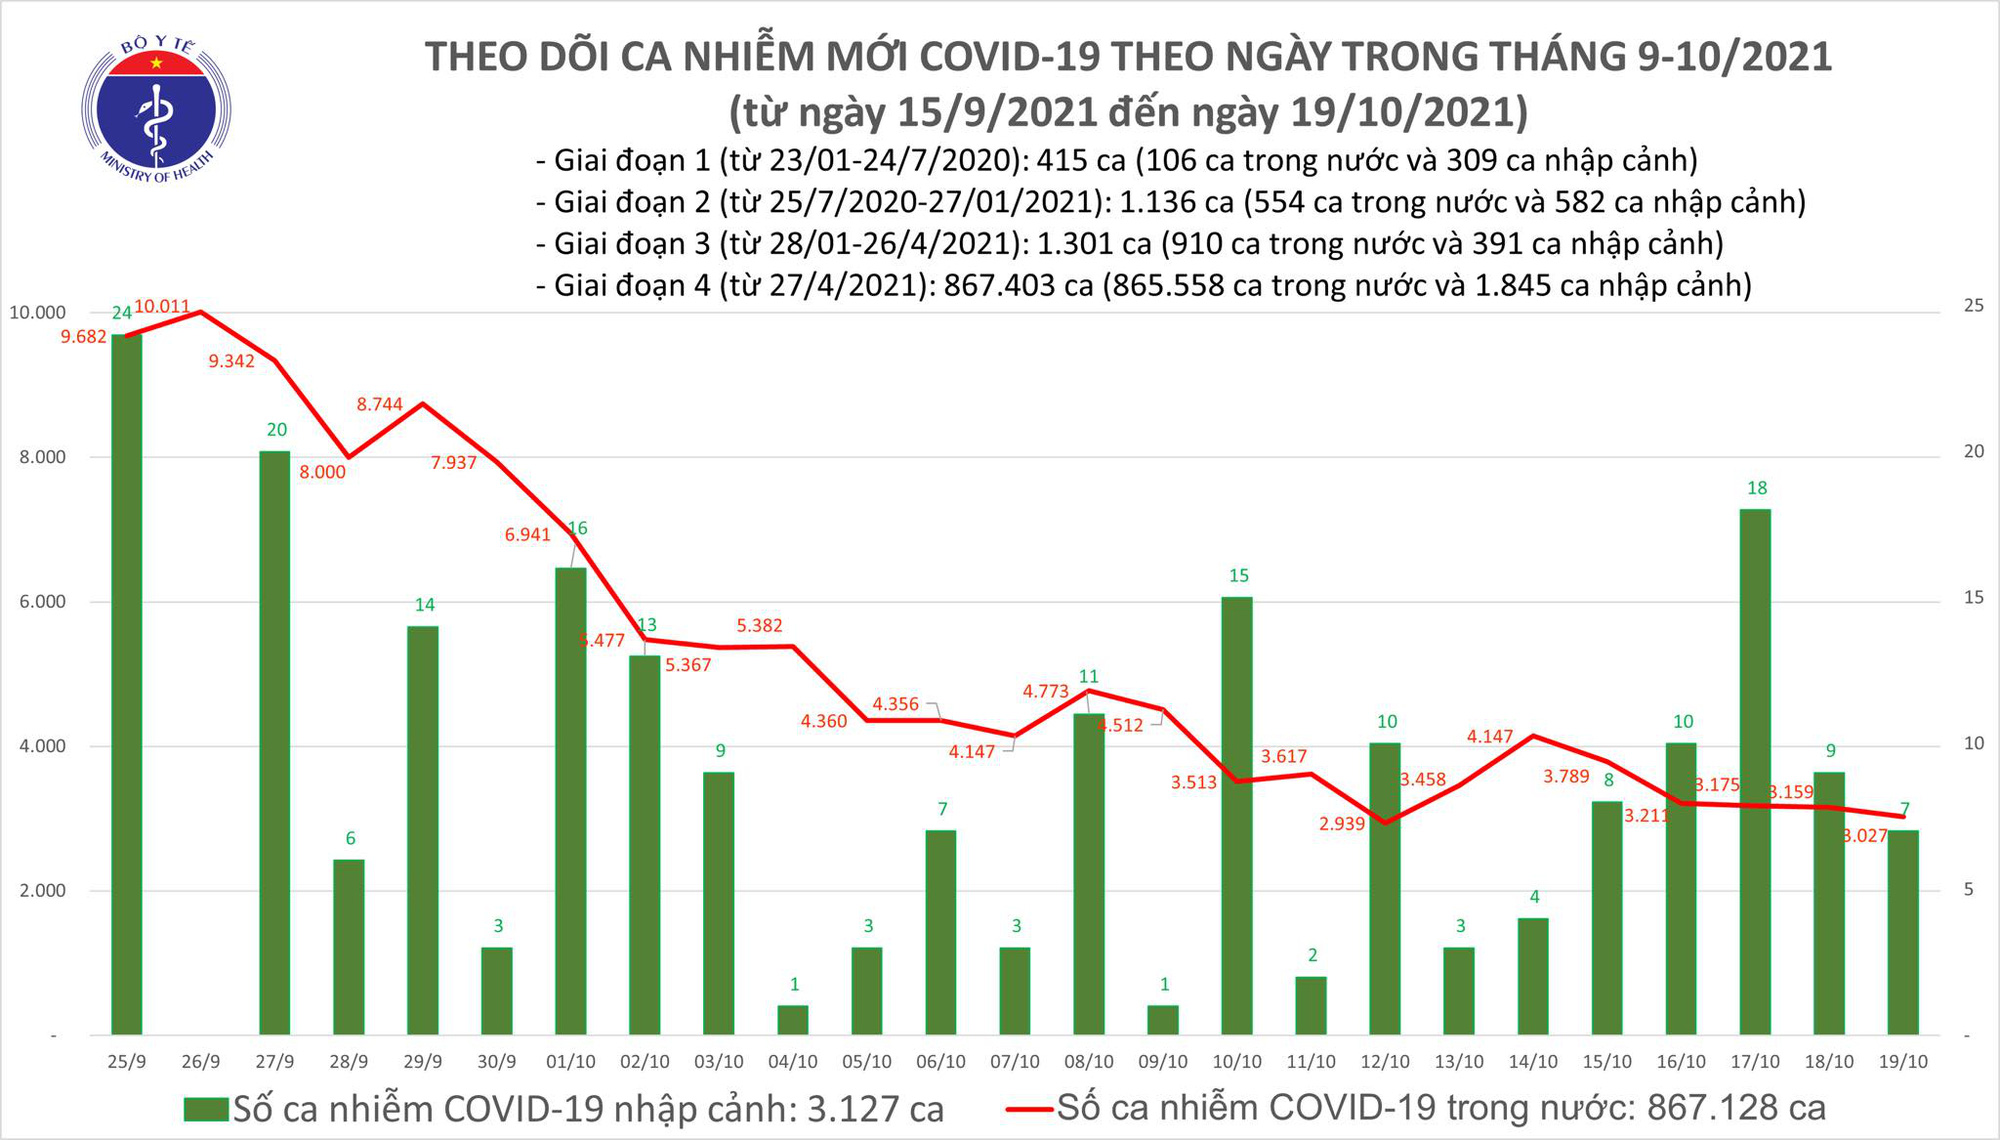 Ngày 19/10: Có 3.034 ca mắc COVID-19 tại TP HCM và 48 tỉnh, thành khác; giảm 132 ca với ngày qua